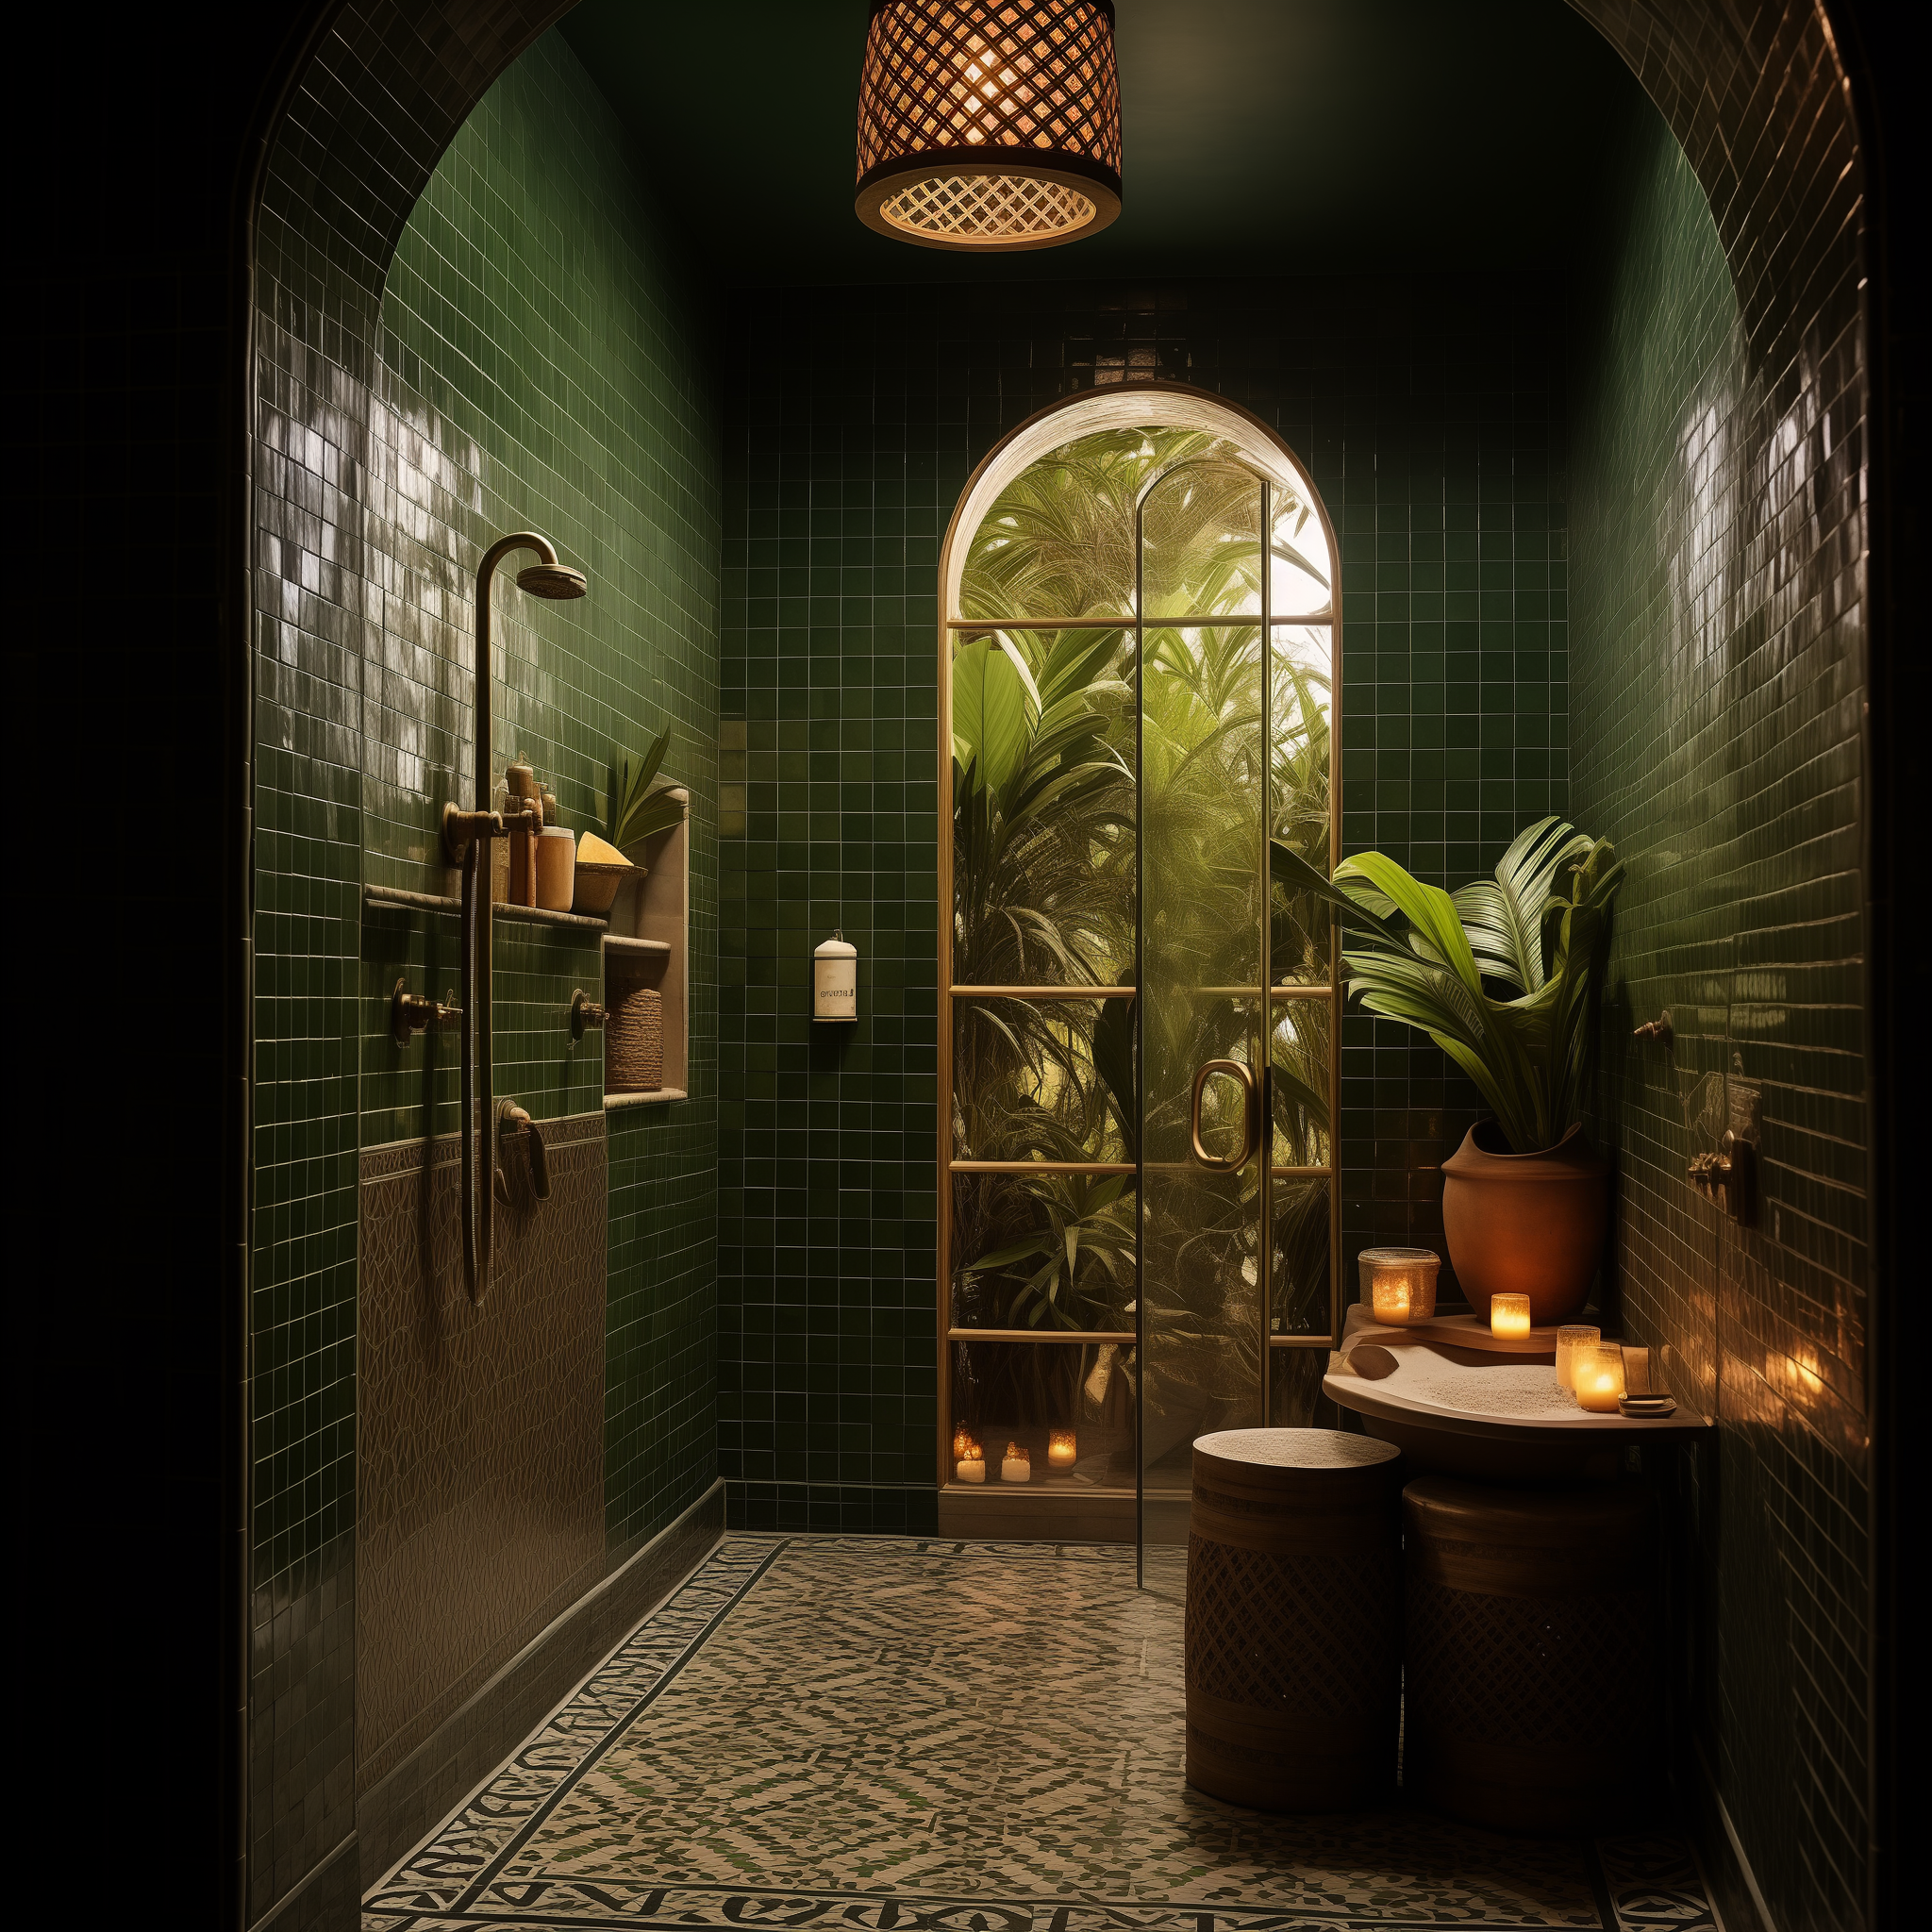 moroccan bathroom ideas decor style design inspired interior architecture theme green